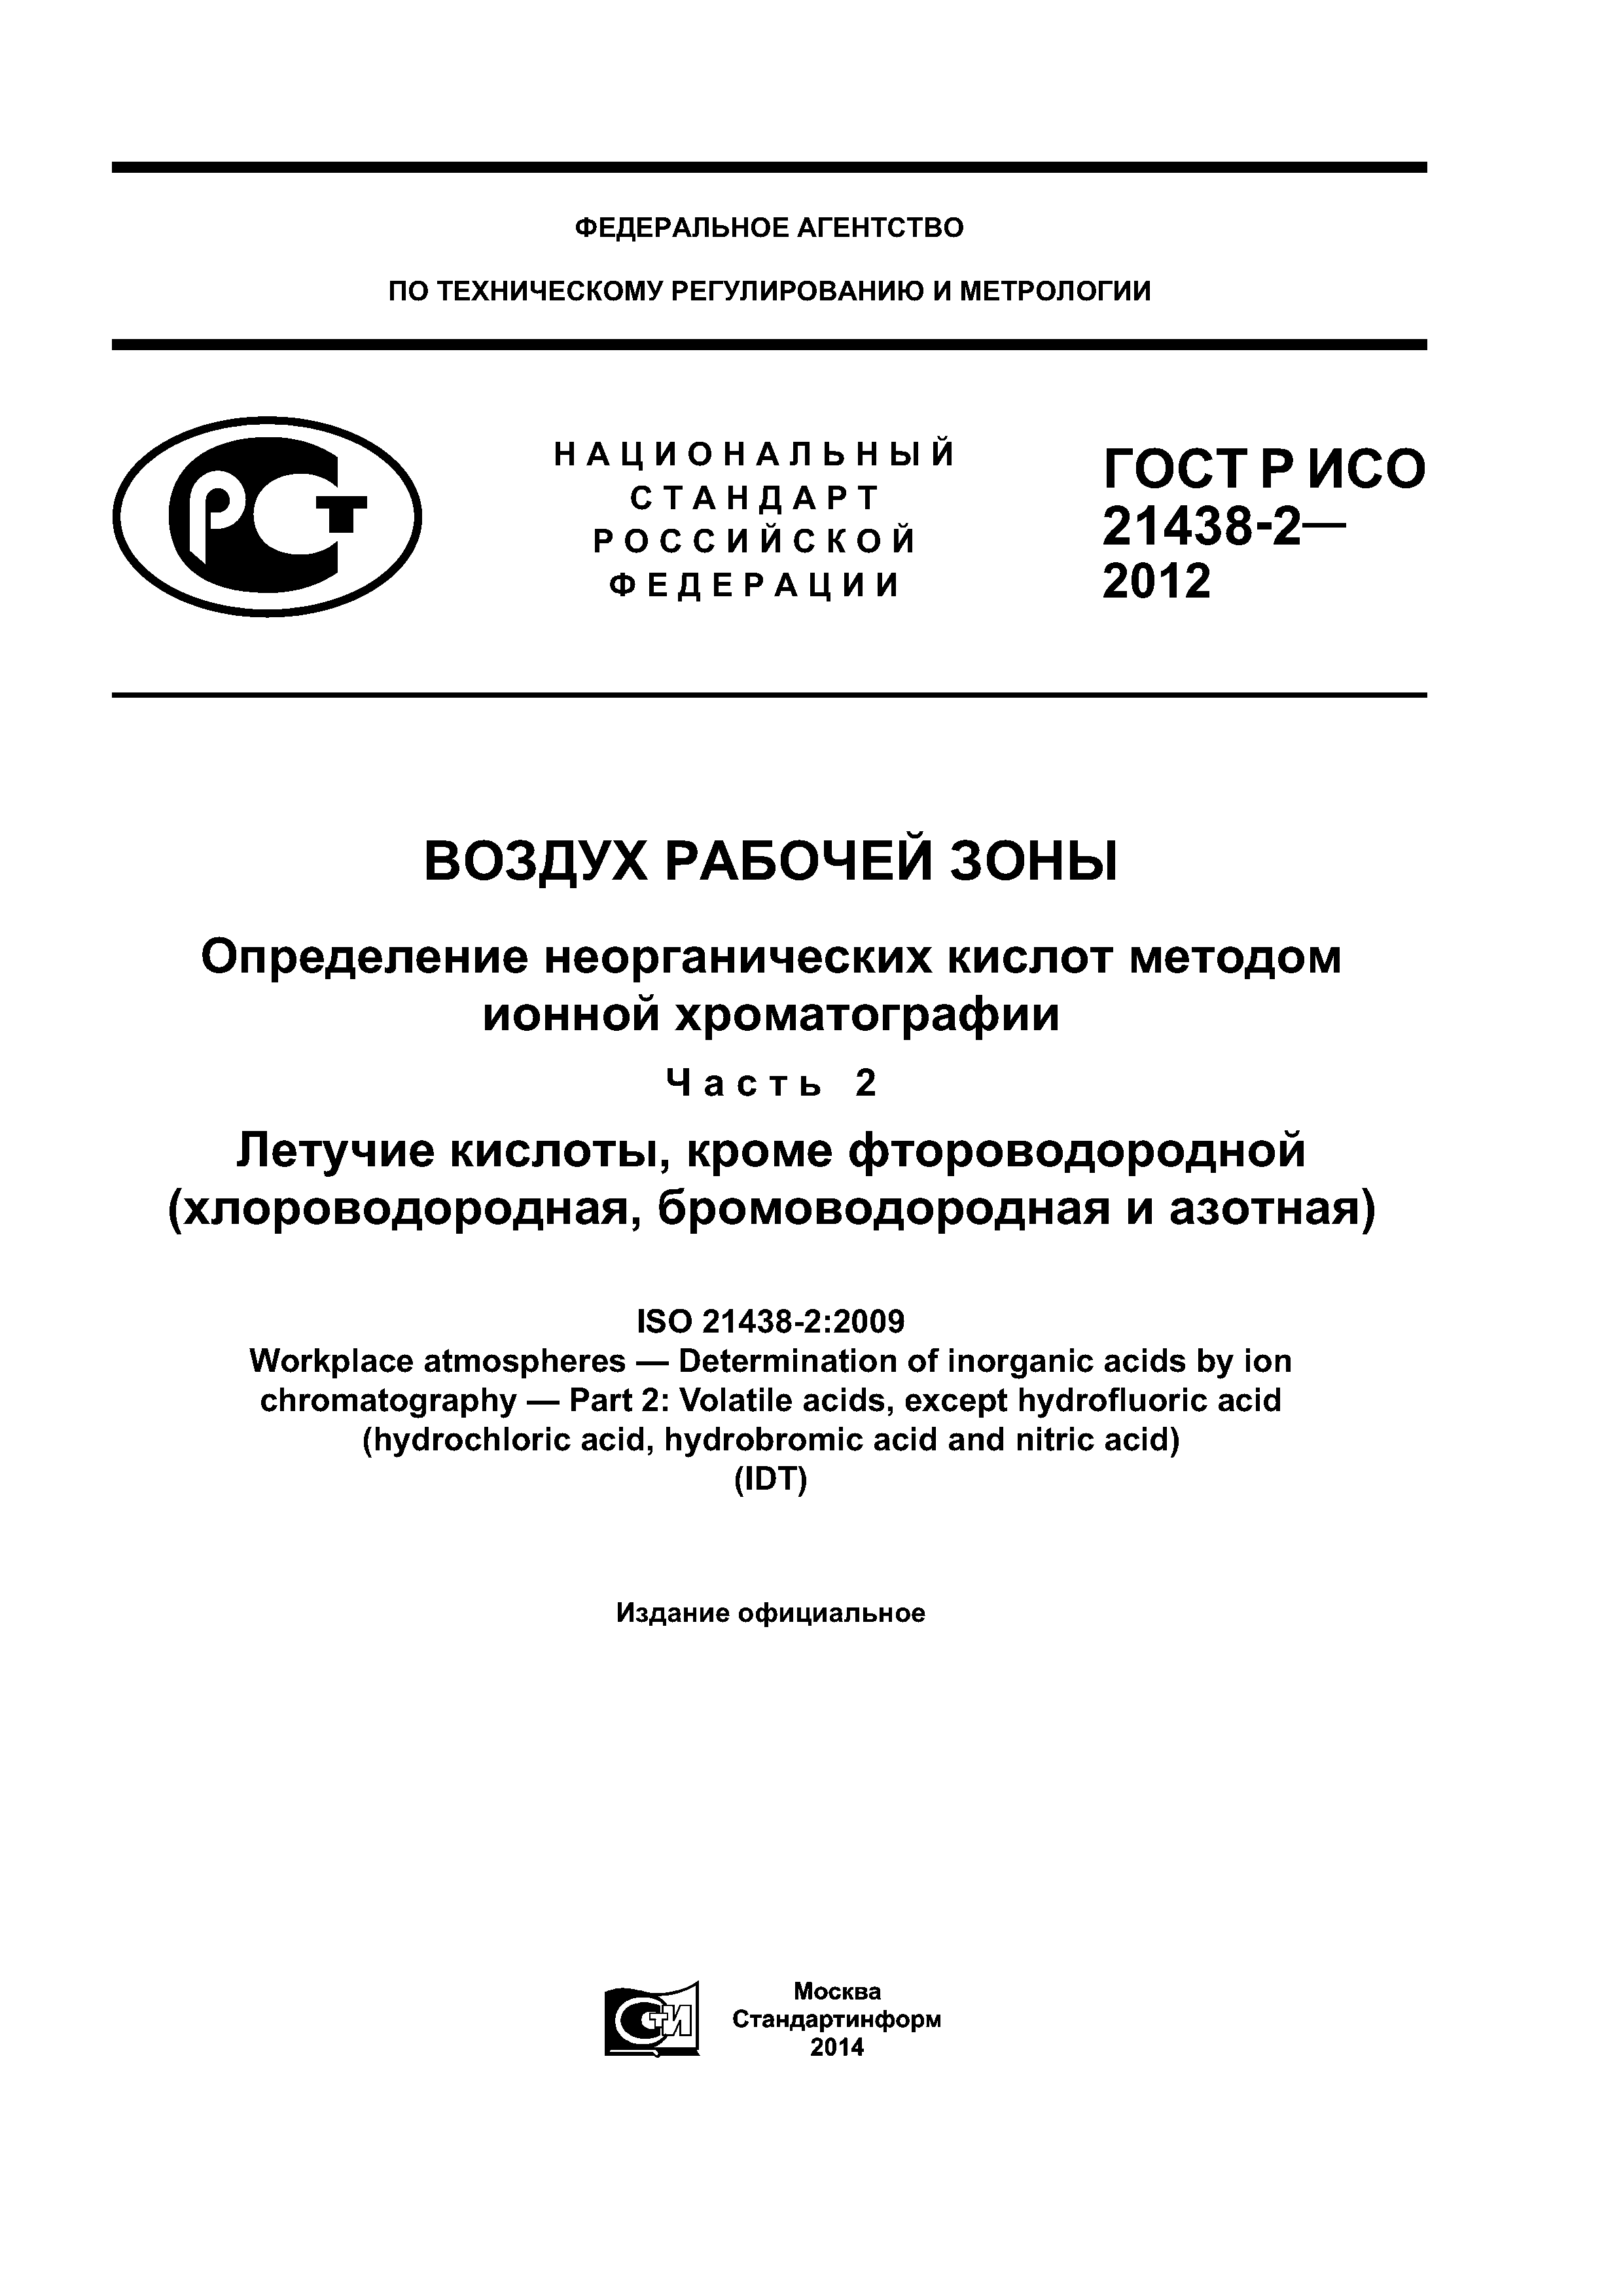 ГОСТ Р ИСО 21438-2-2012